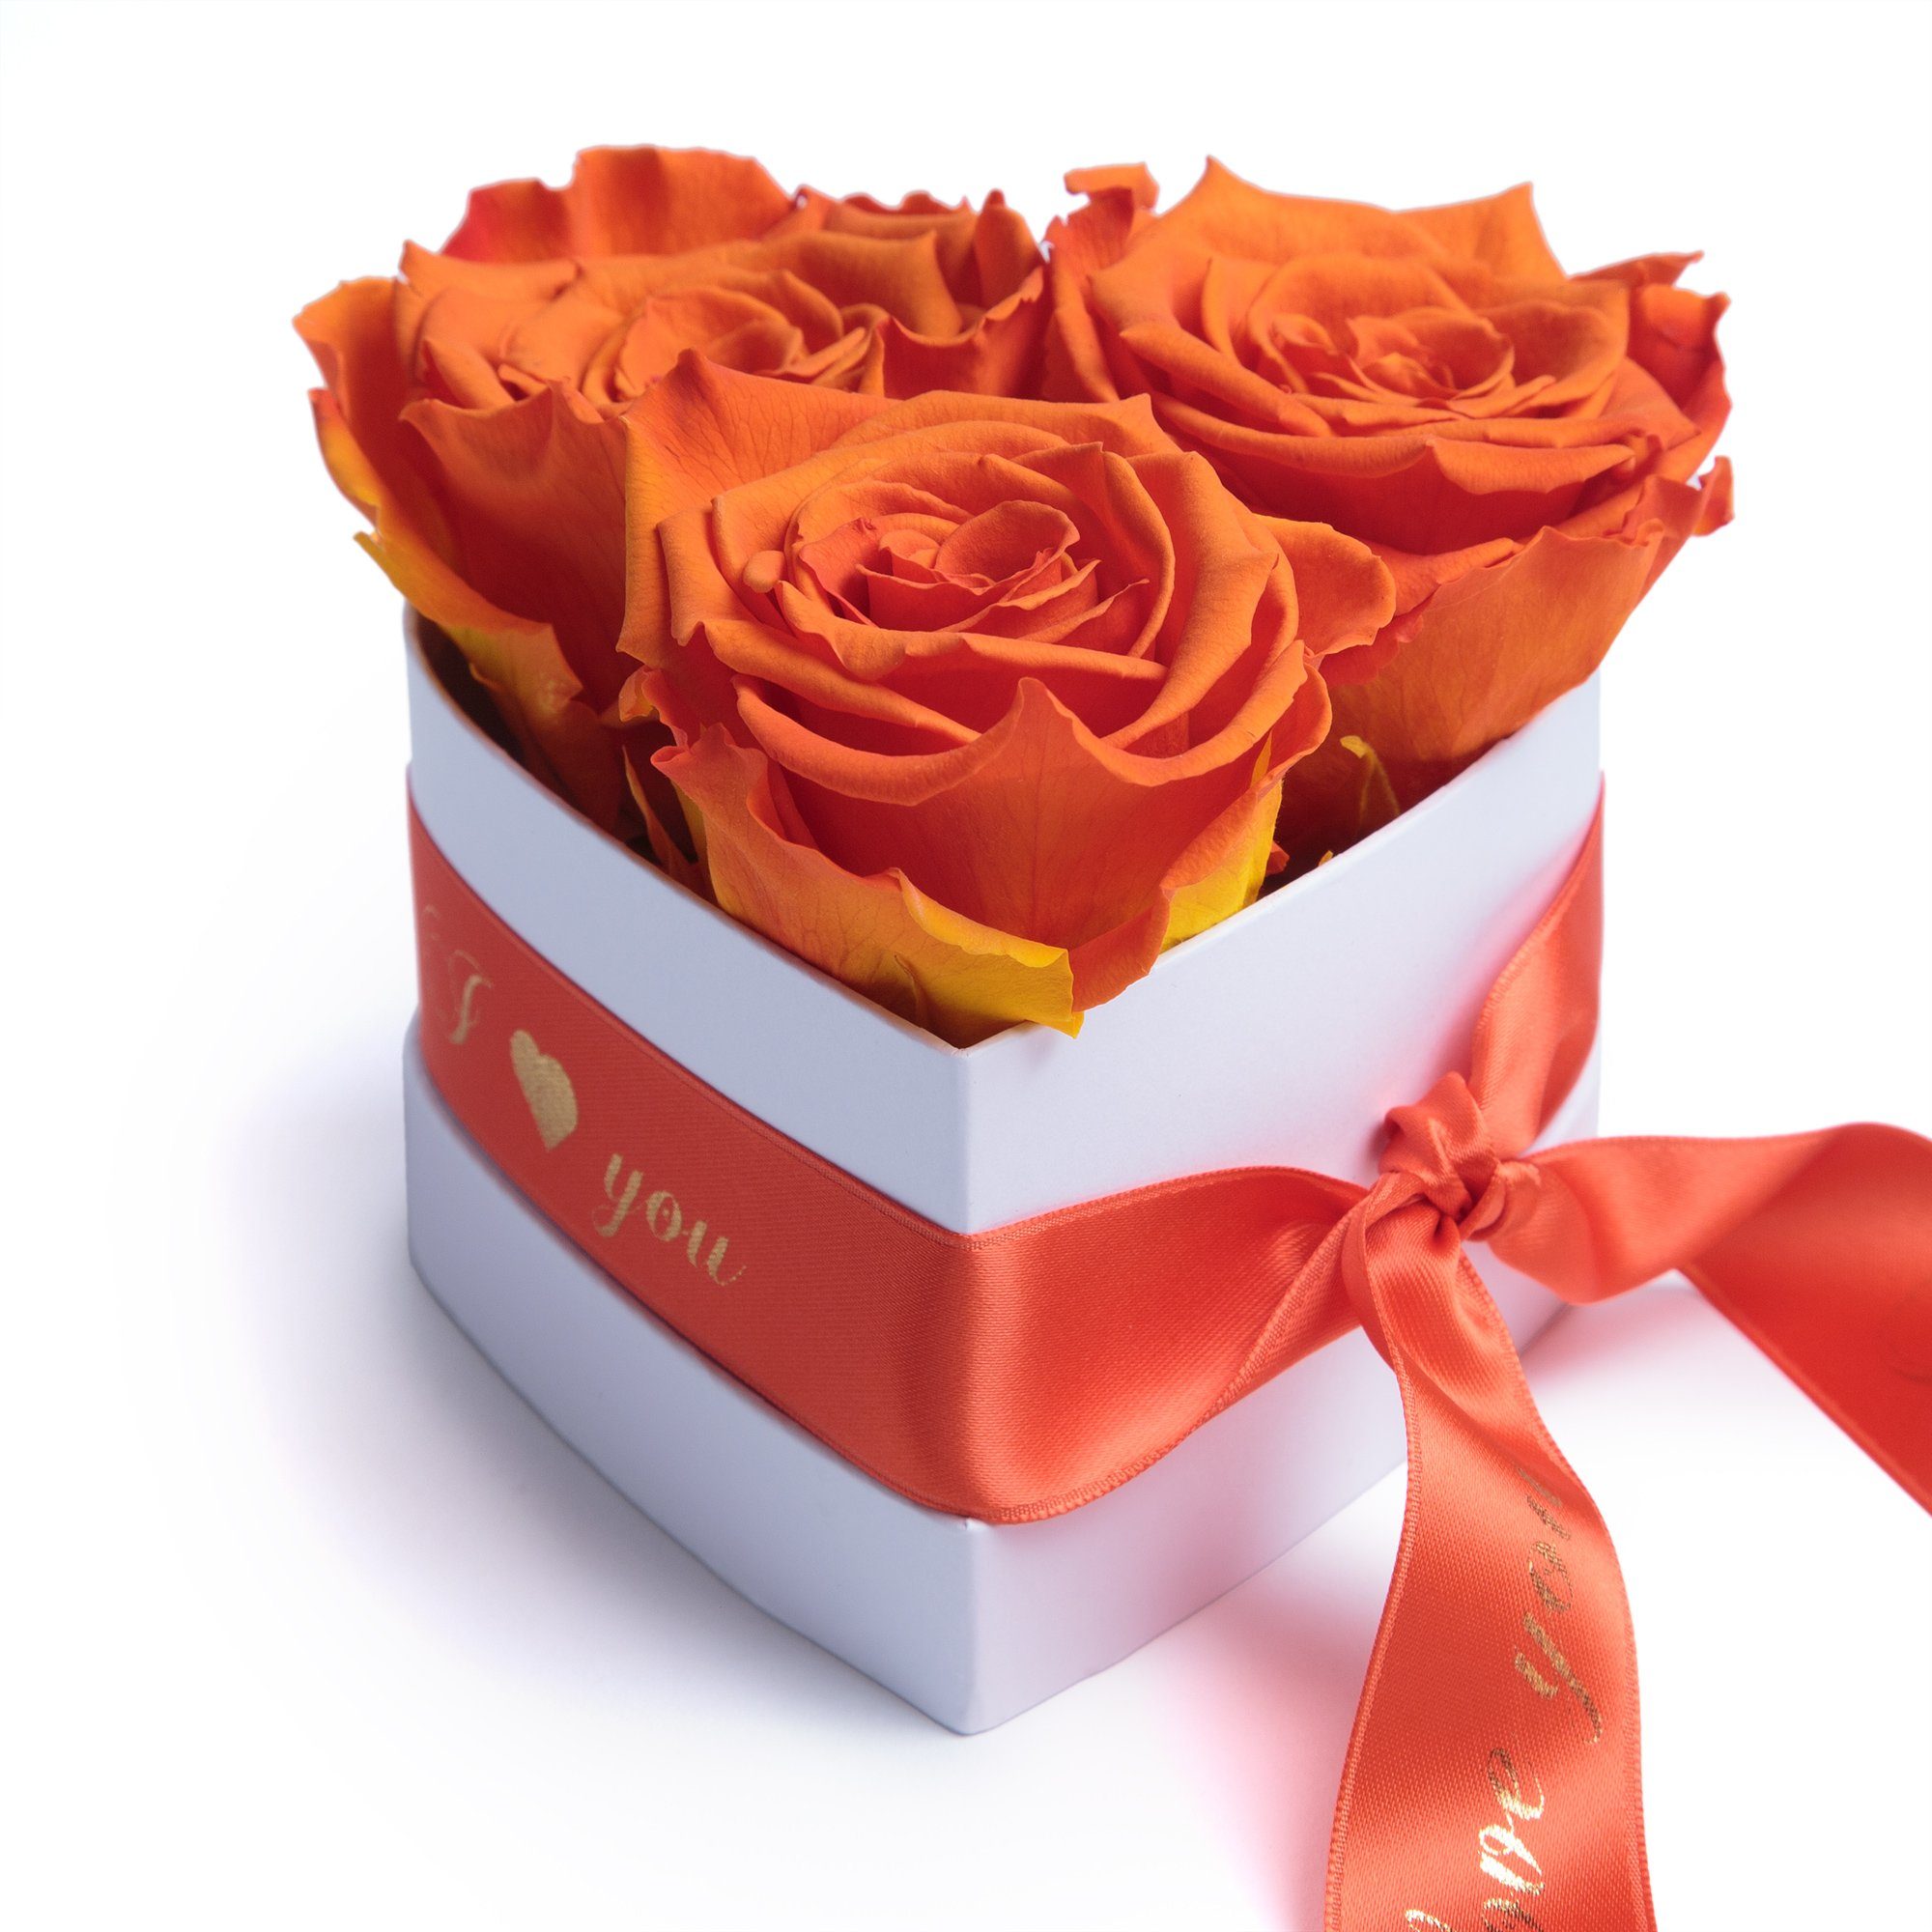 Kunstblume Rosenbox Herz 3 konservierte Infinity Rosen in Box I Love You Rose, ROSEMARIE SCHULZ Heidelberg, Höhe 8.5 cm, Valentinstag Geschenk für Sie Orange